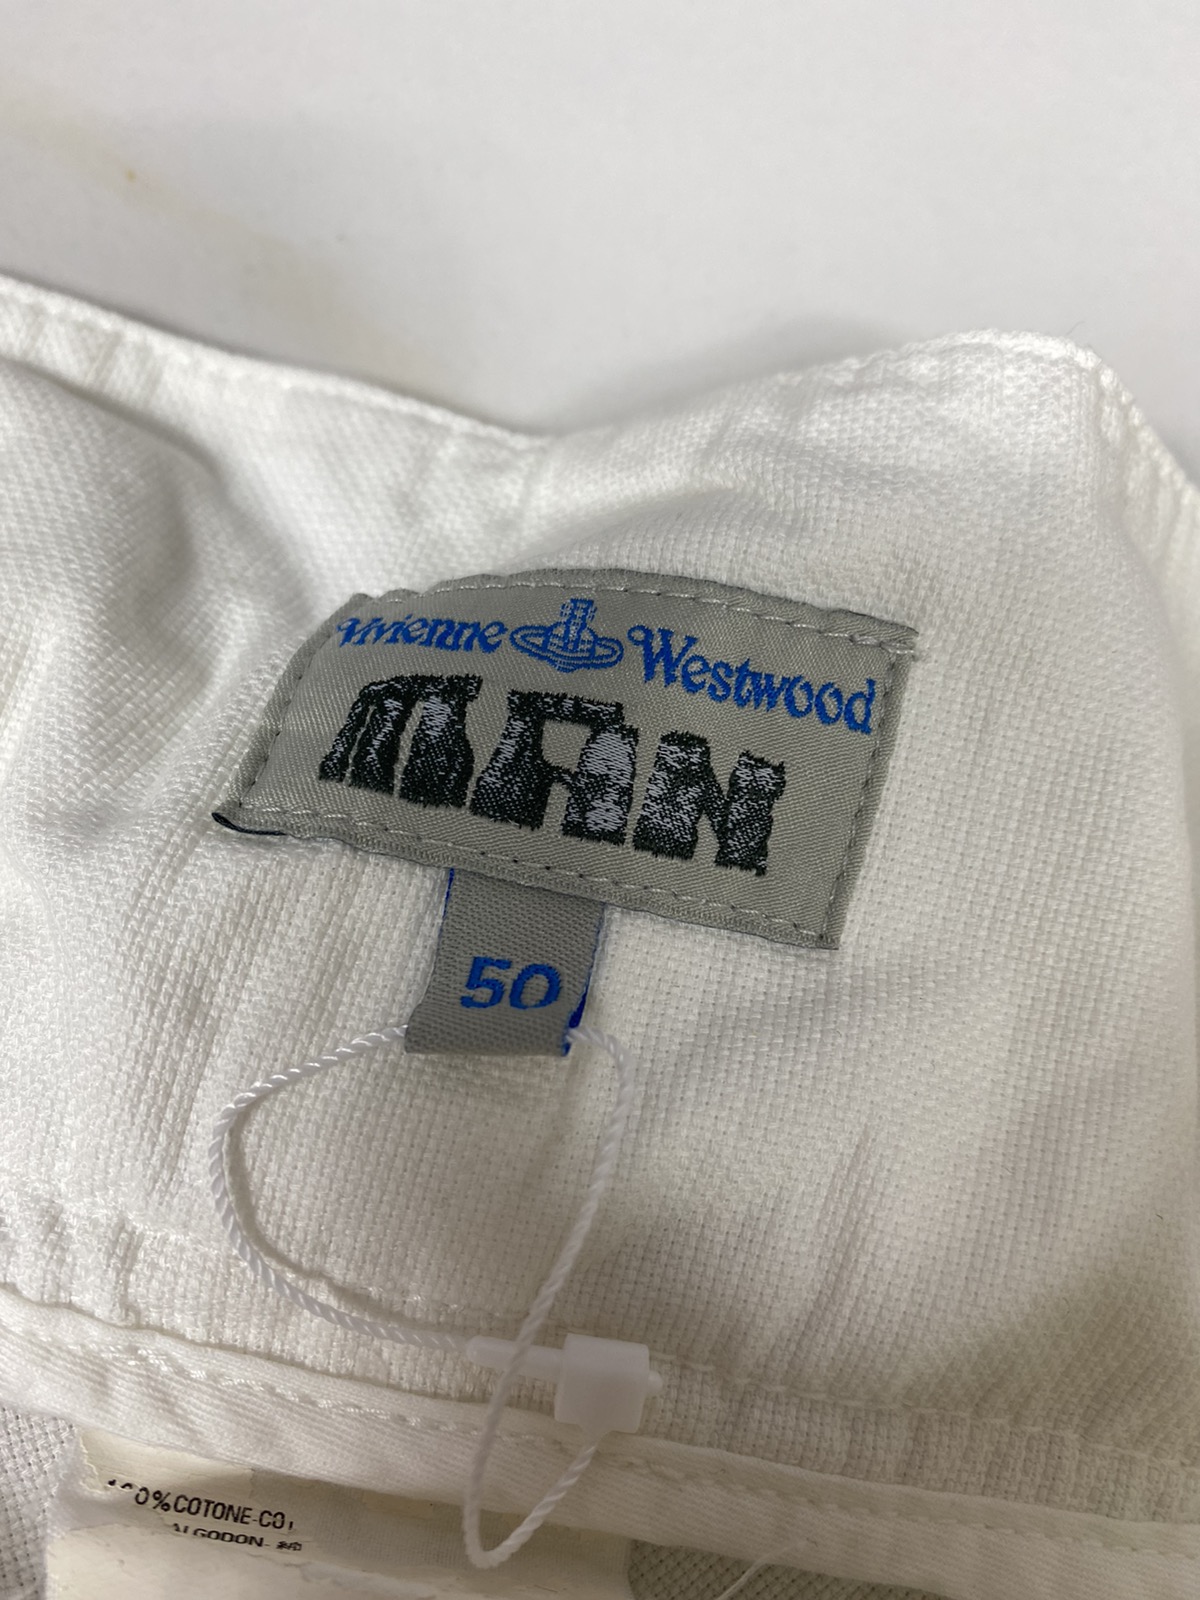 Vivienne Westwood Man Parachute Trousers Pants. S0119 - 9